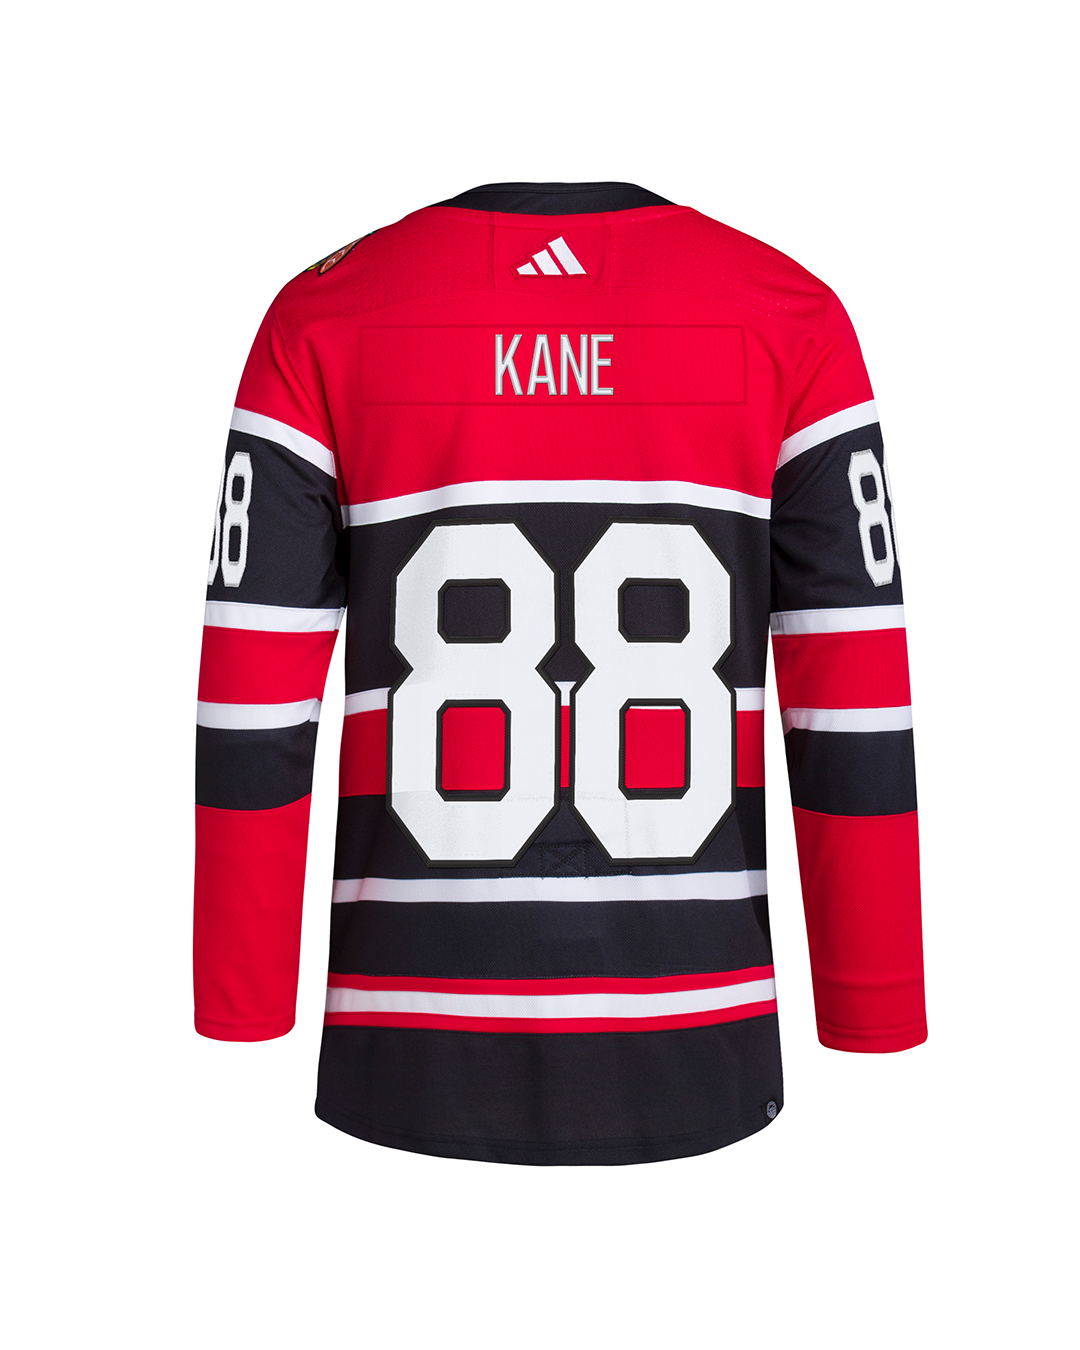 Chicago Blackhawks Patrick Kane Youth Size Large Black Jersey NHL